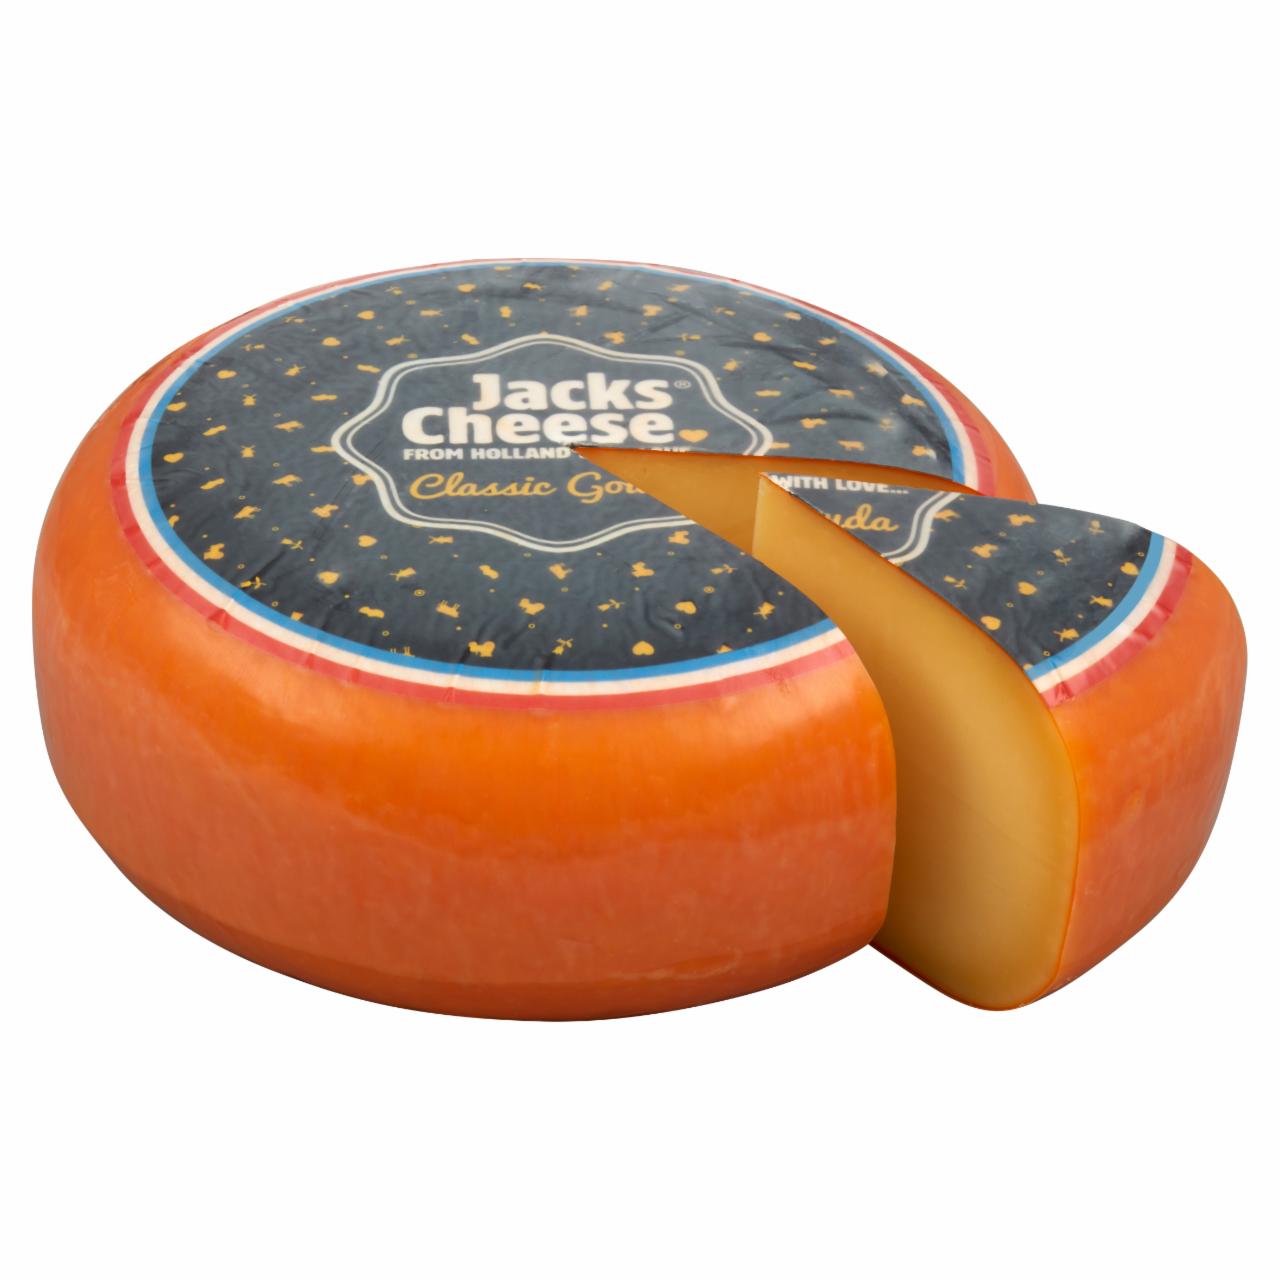 Képek - Jacks Cheese holland gouda félkemény, zsíros sajt